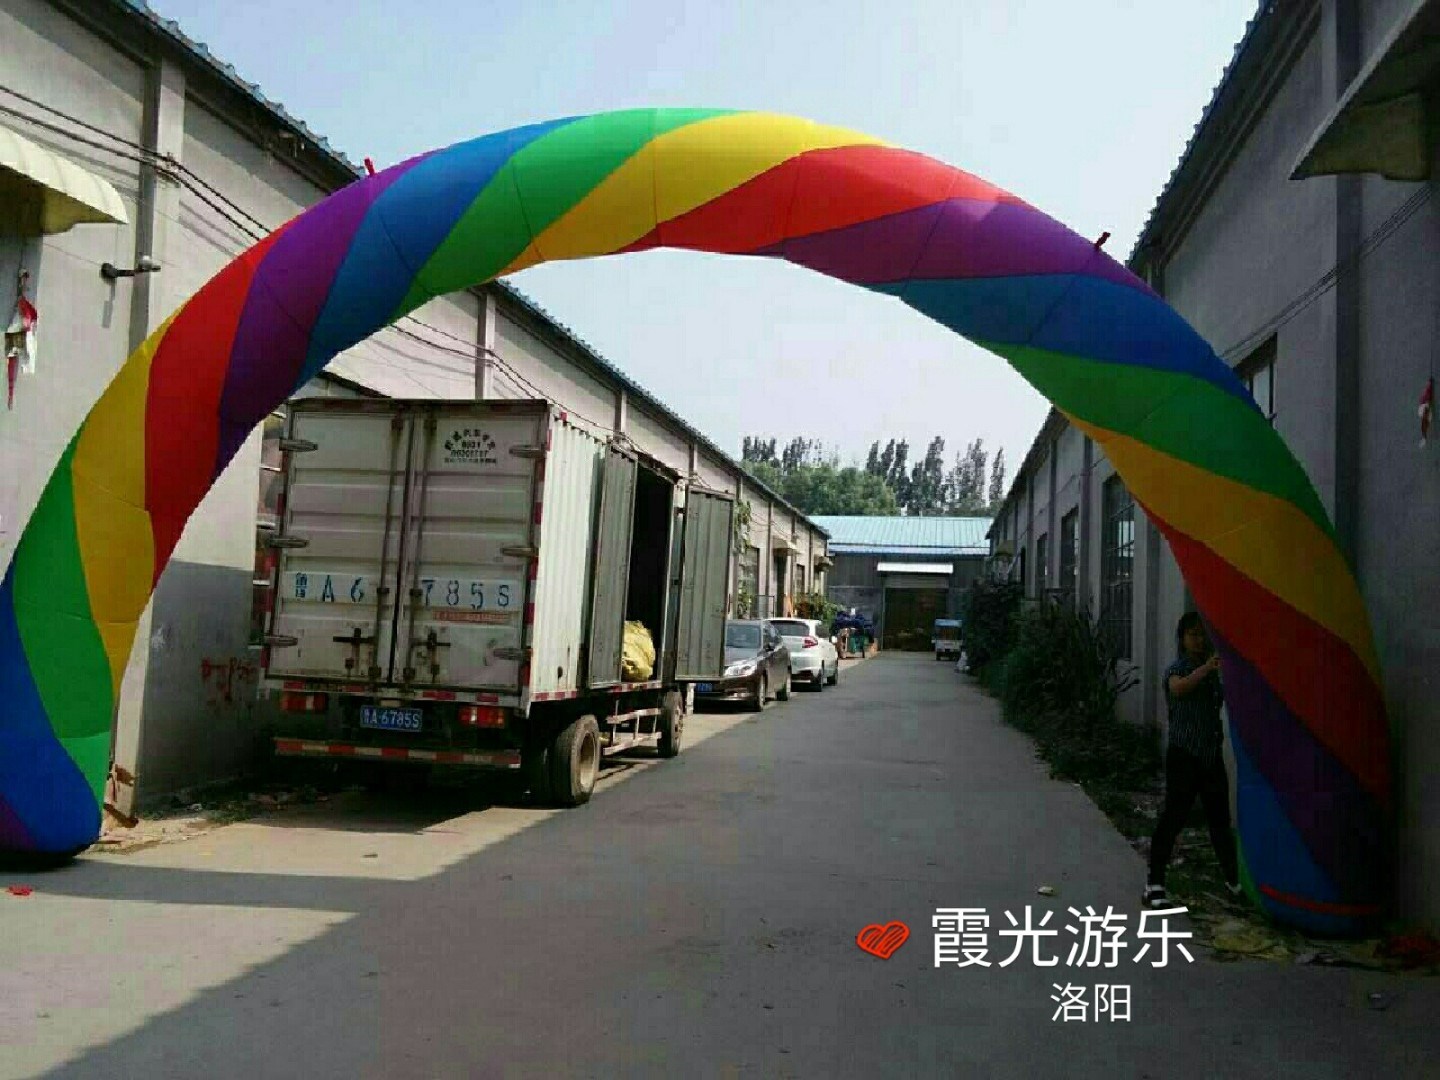 乐昌彩虹拱门